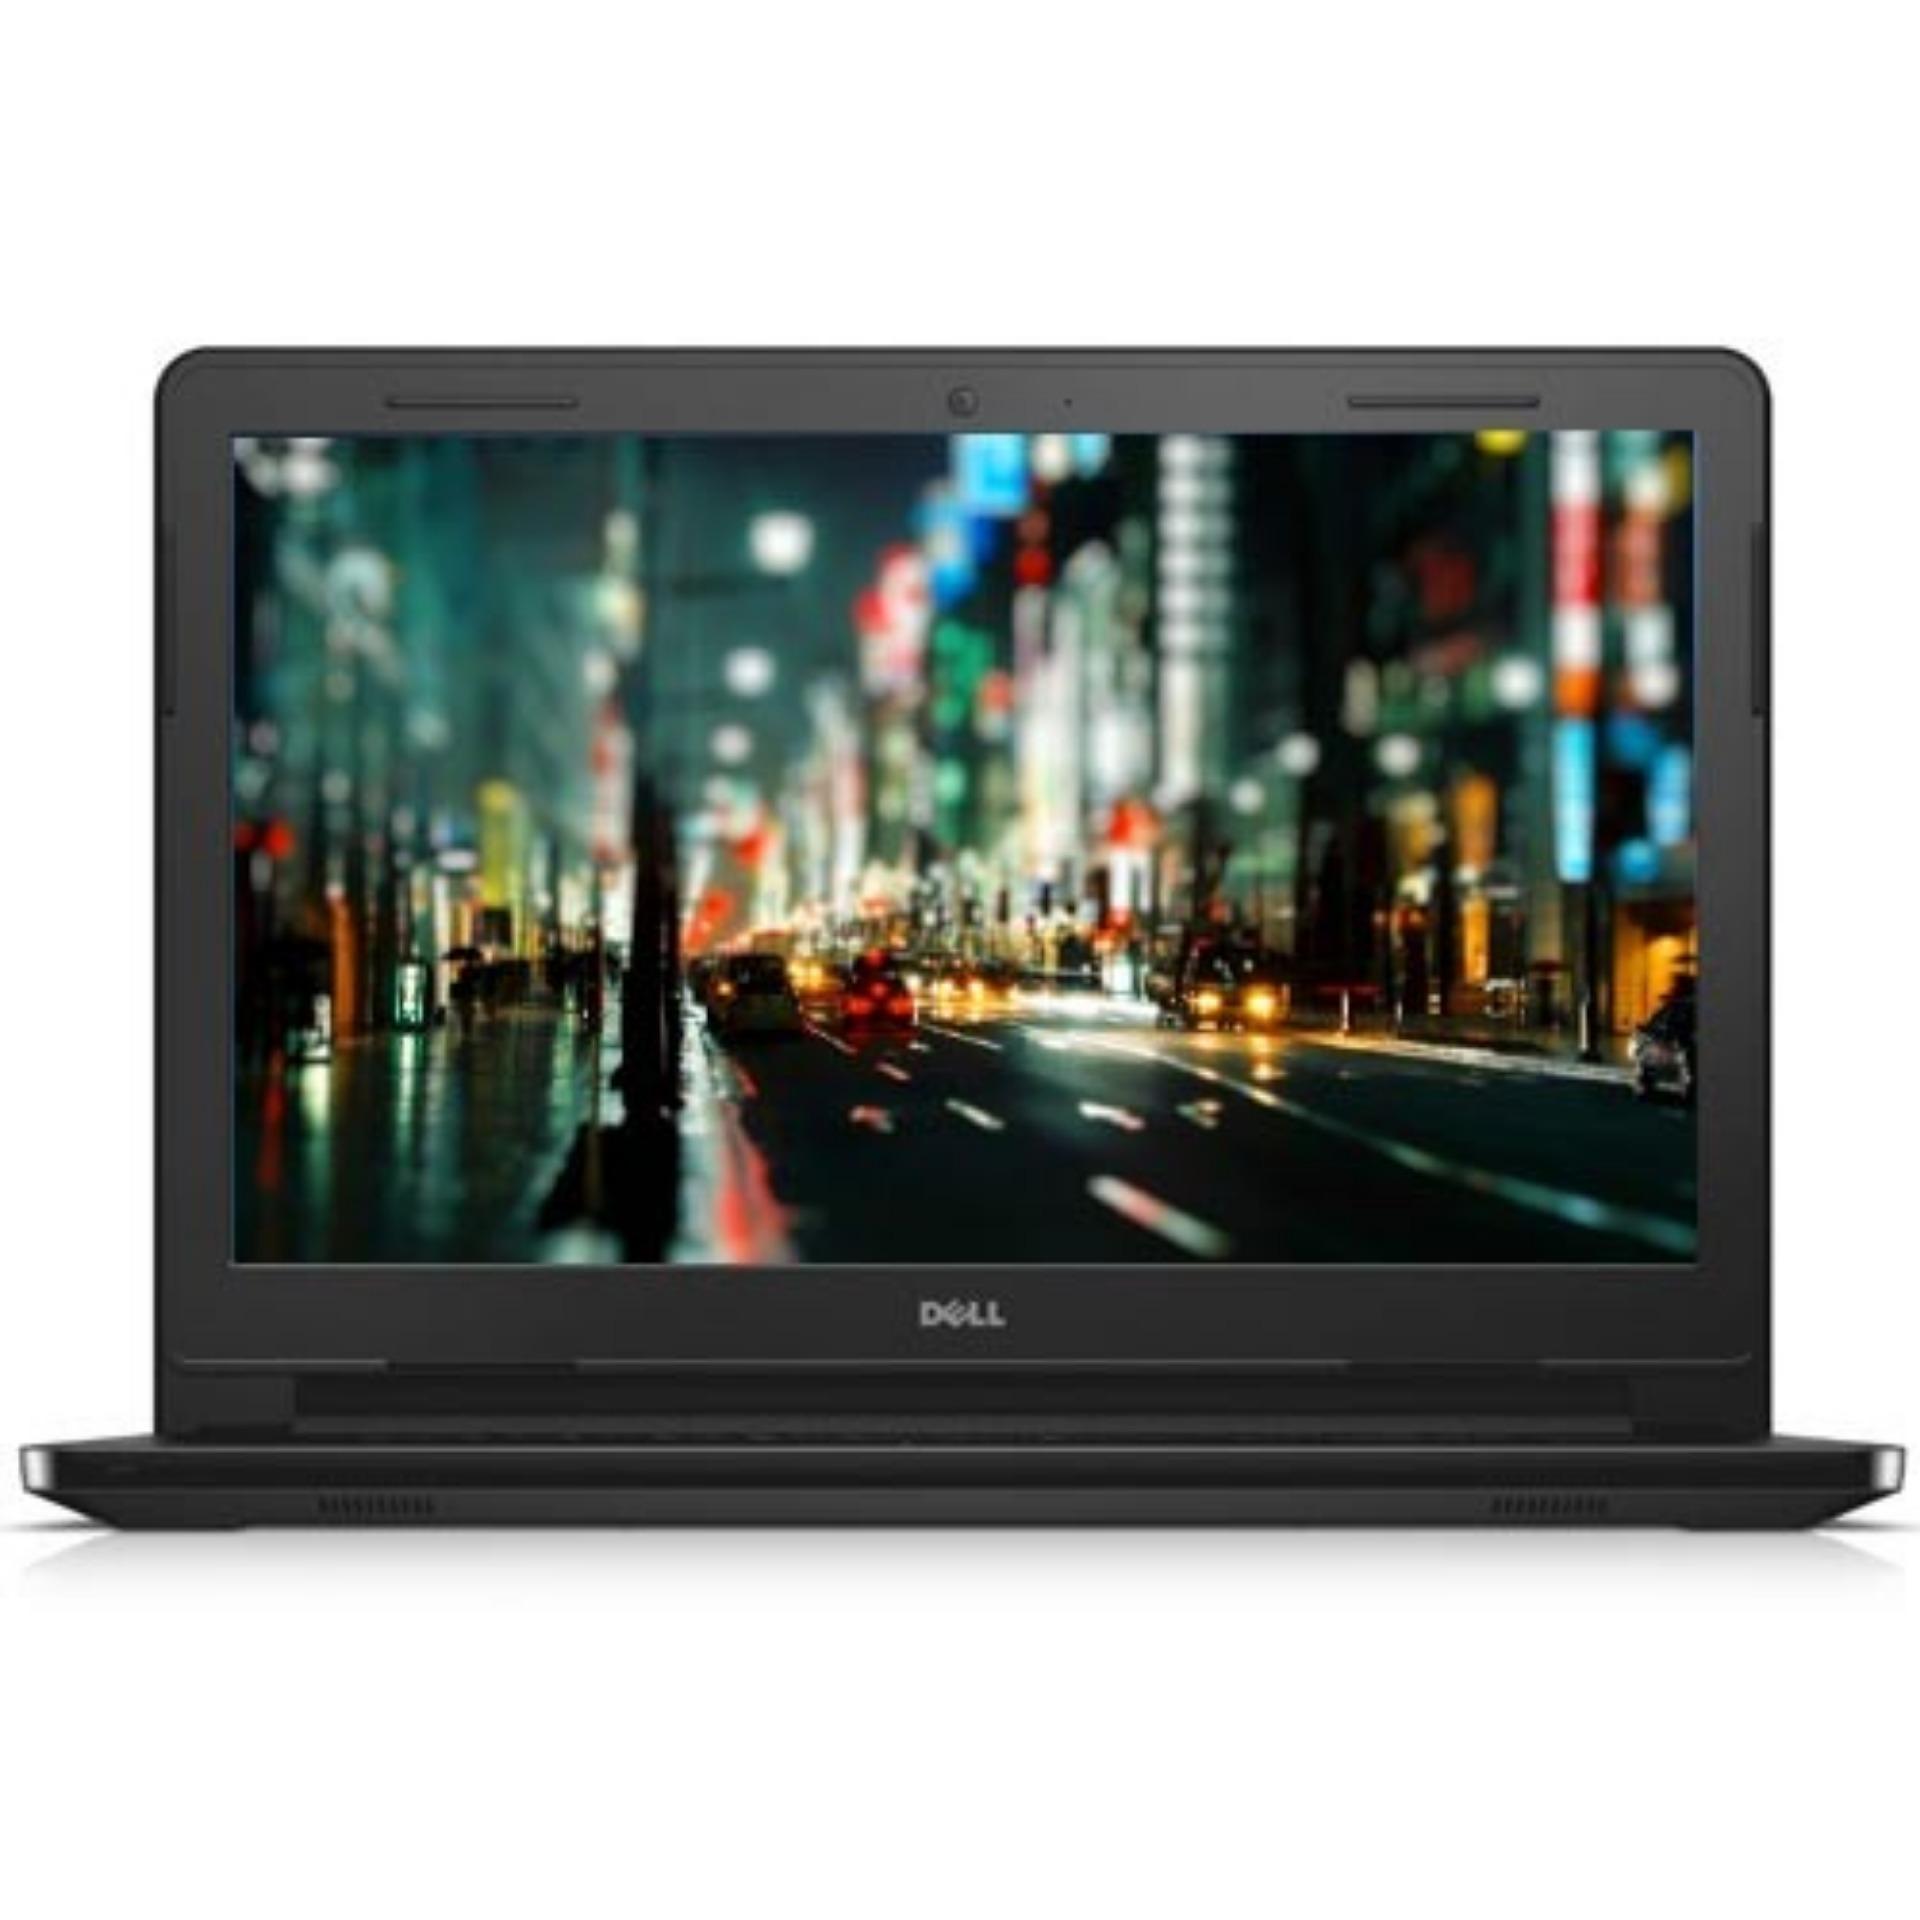 Laptop DELL INSPIRON N3467 M20NR1 14 inch (Đen) - Hãng Phân phối chính thức